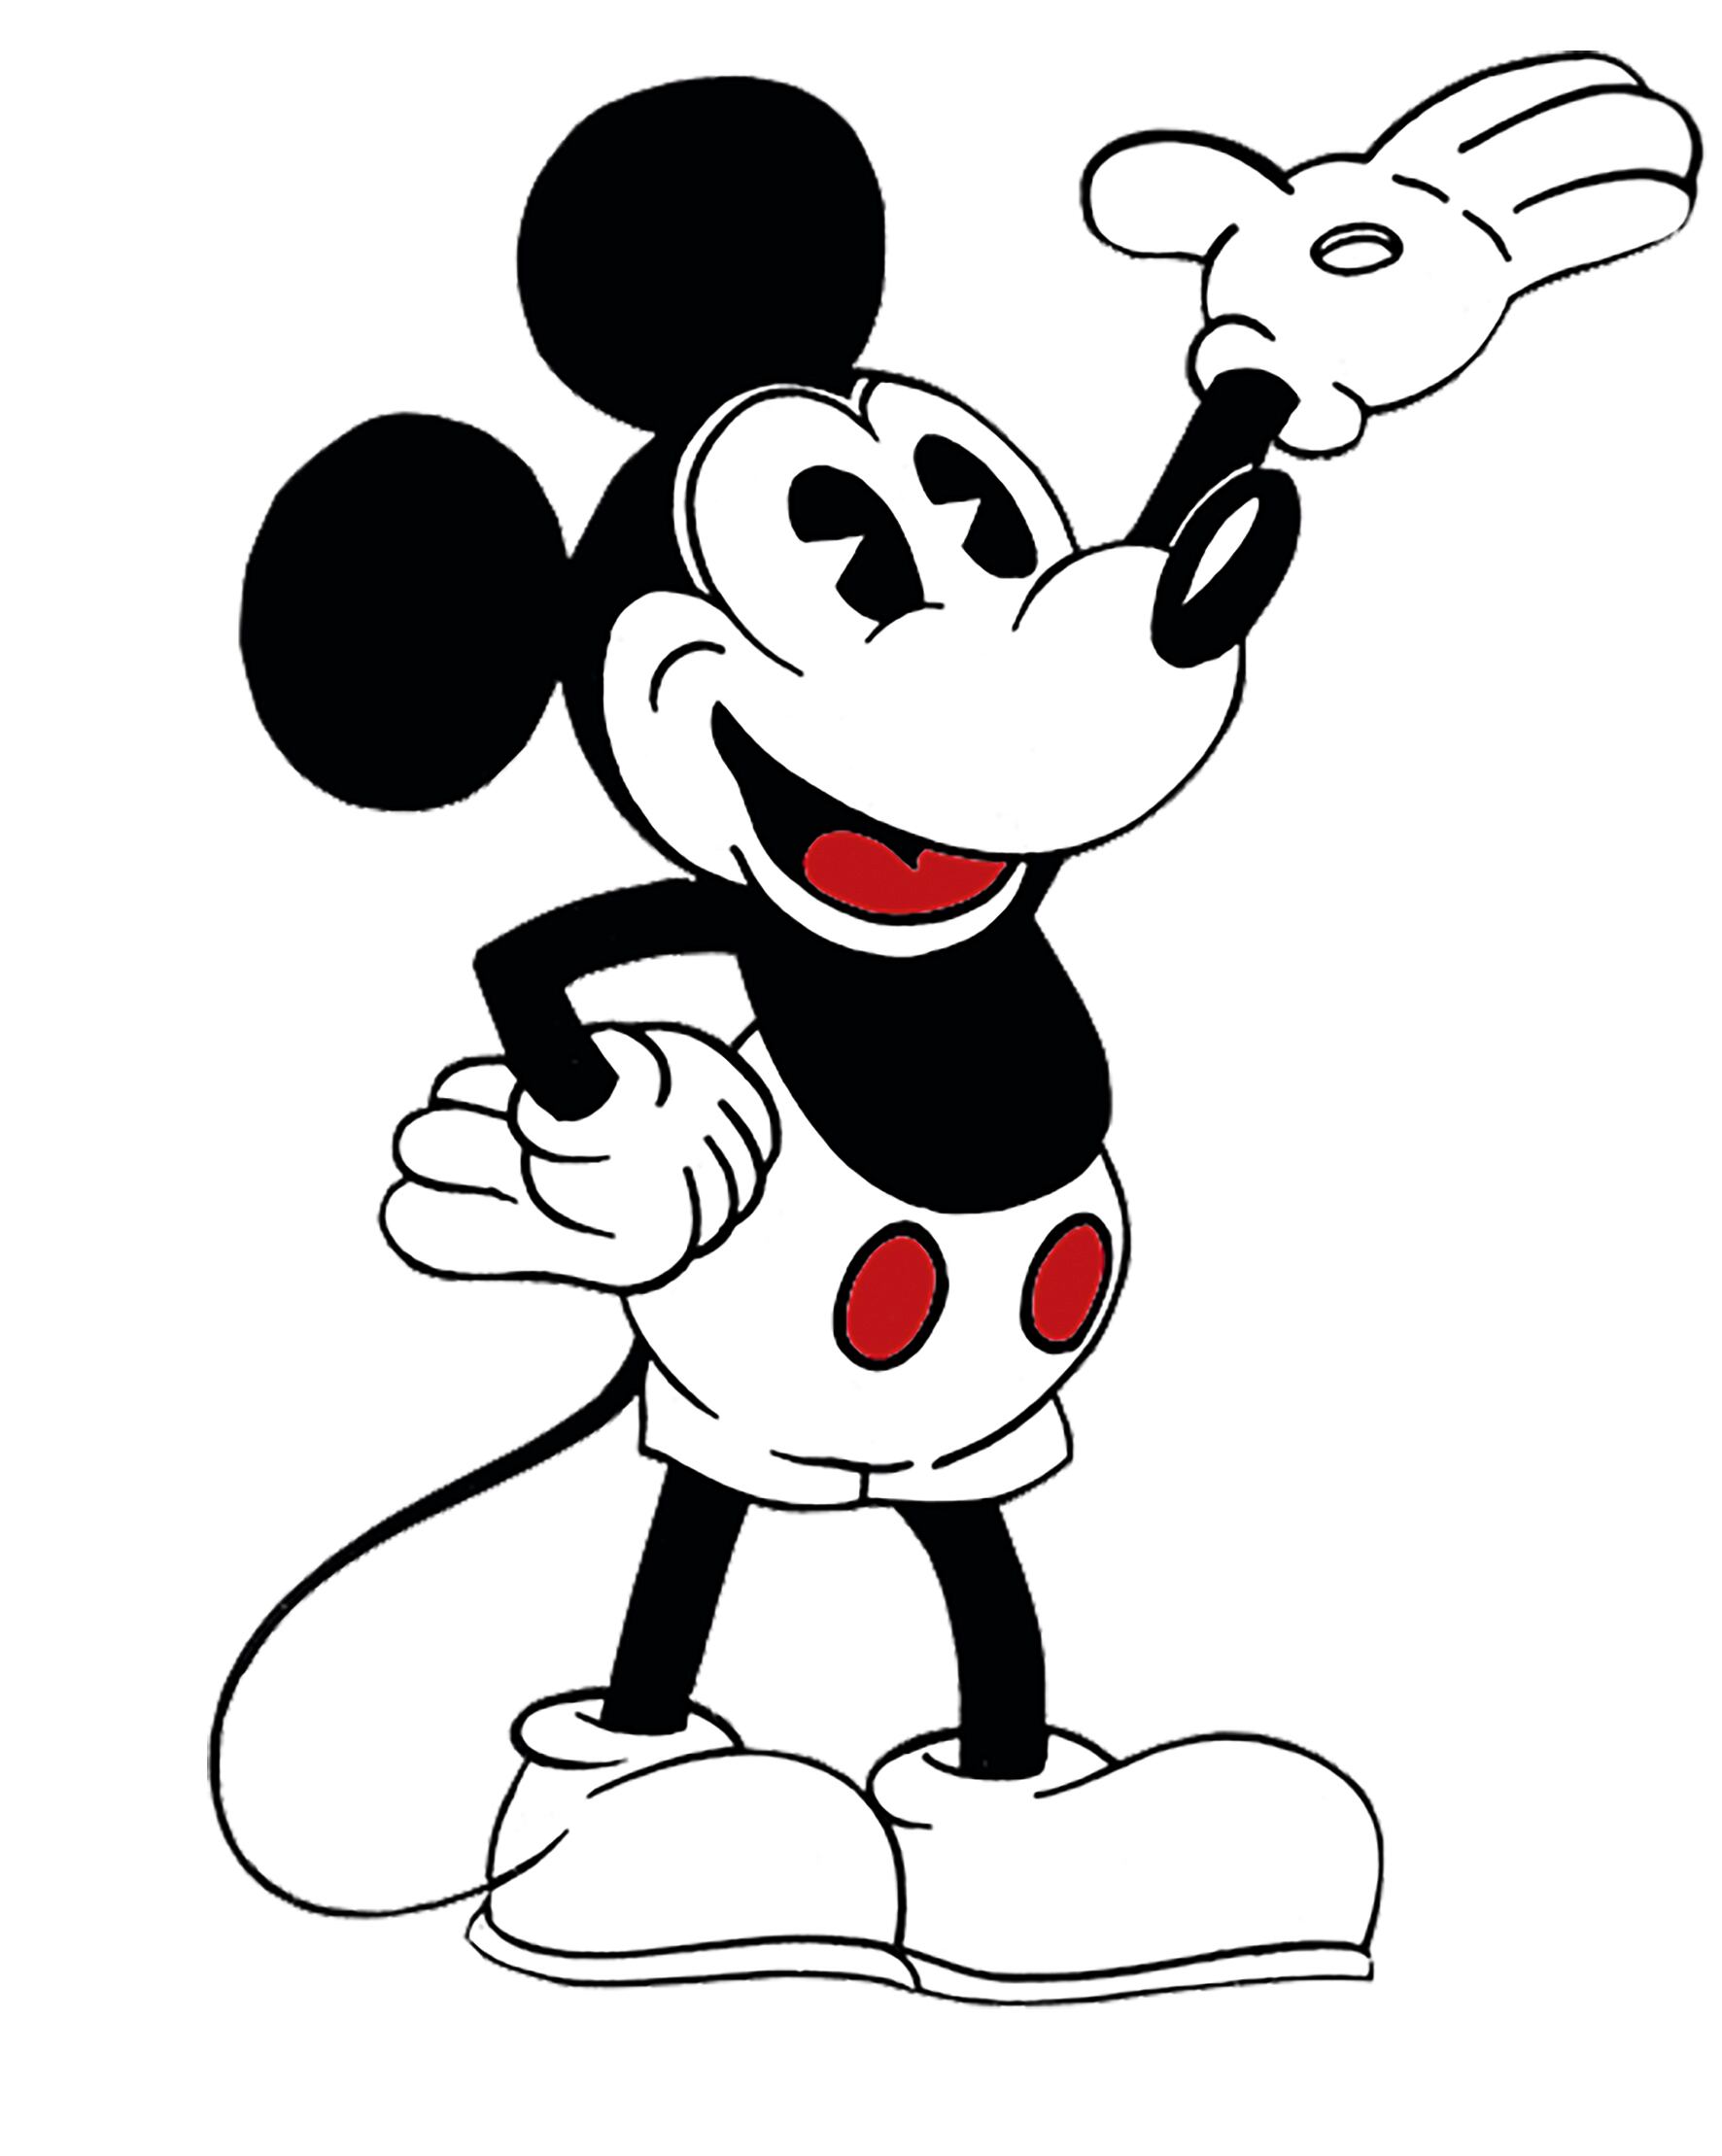 Uno de los primeros Mickey Mouse creados por Disney, alrededor de 1930.